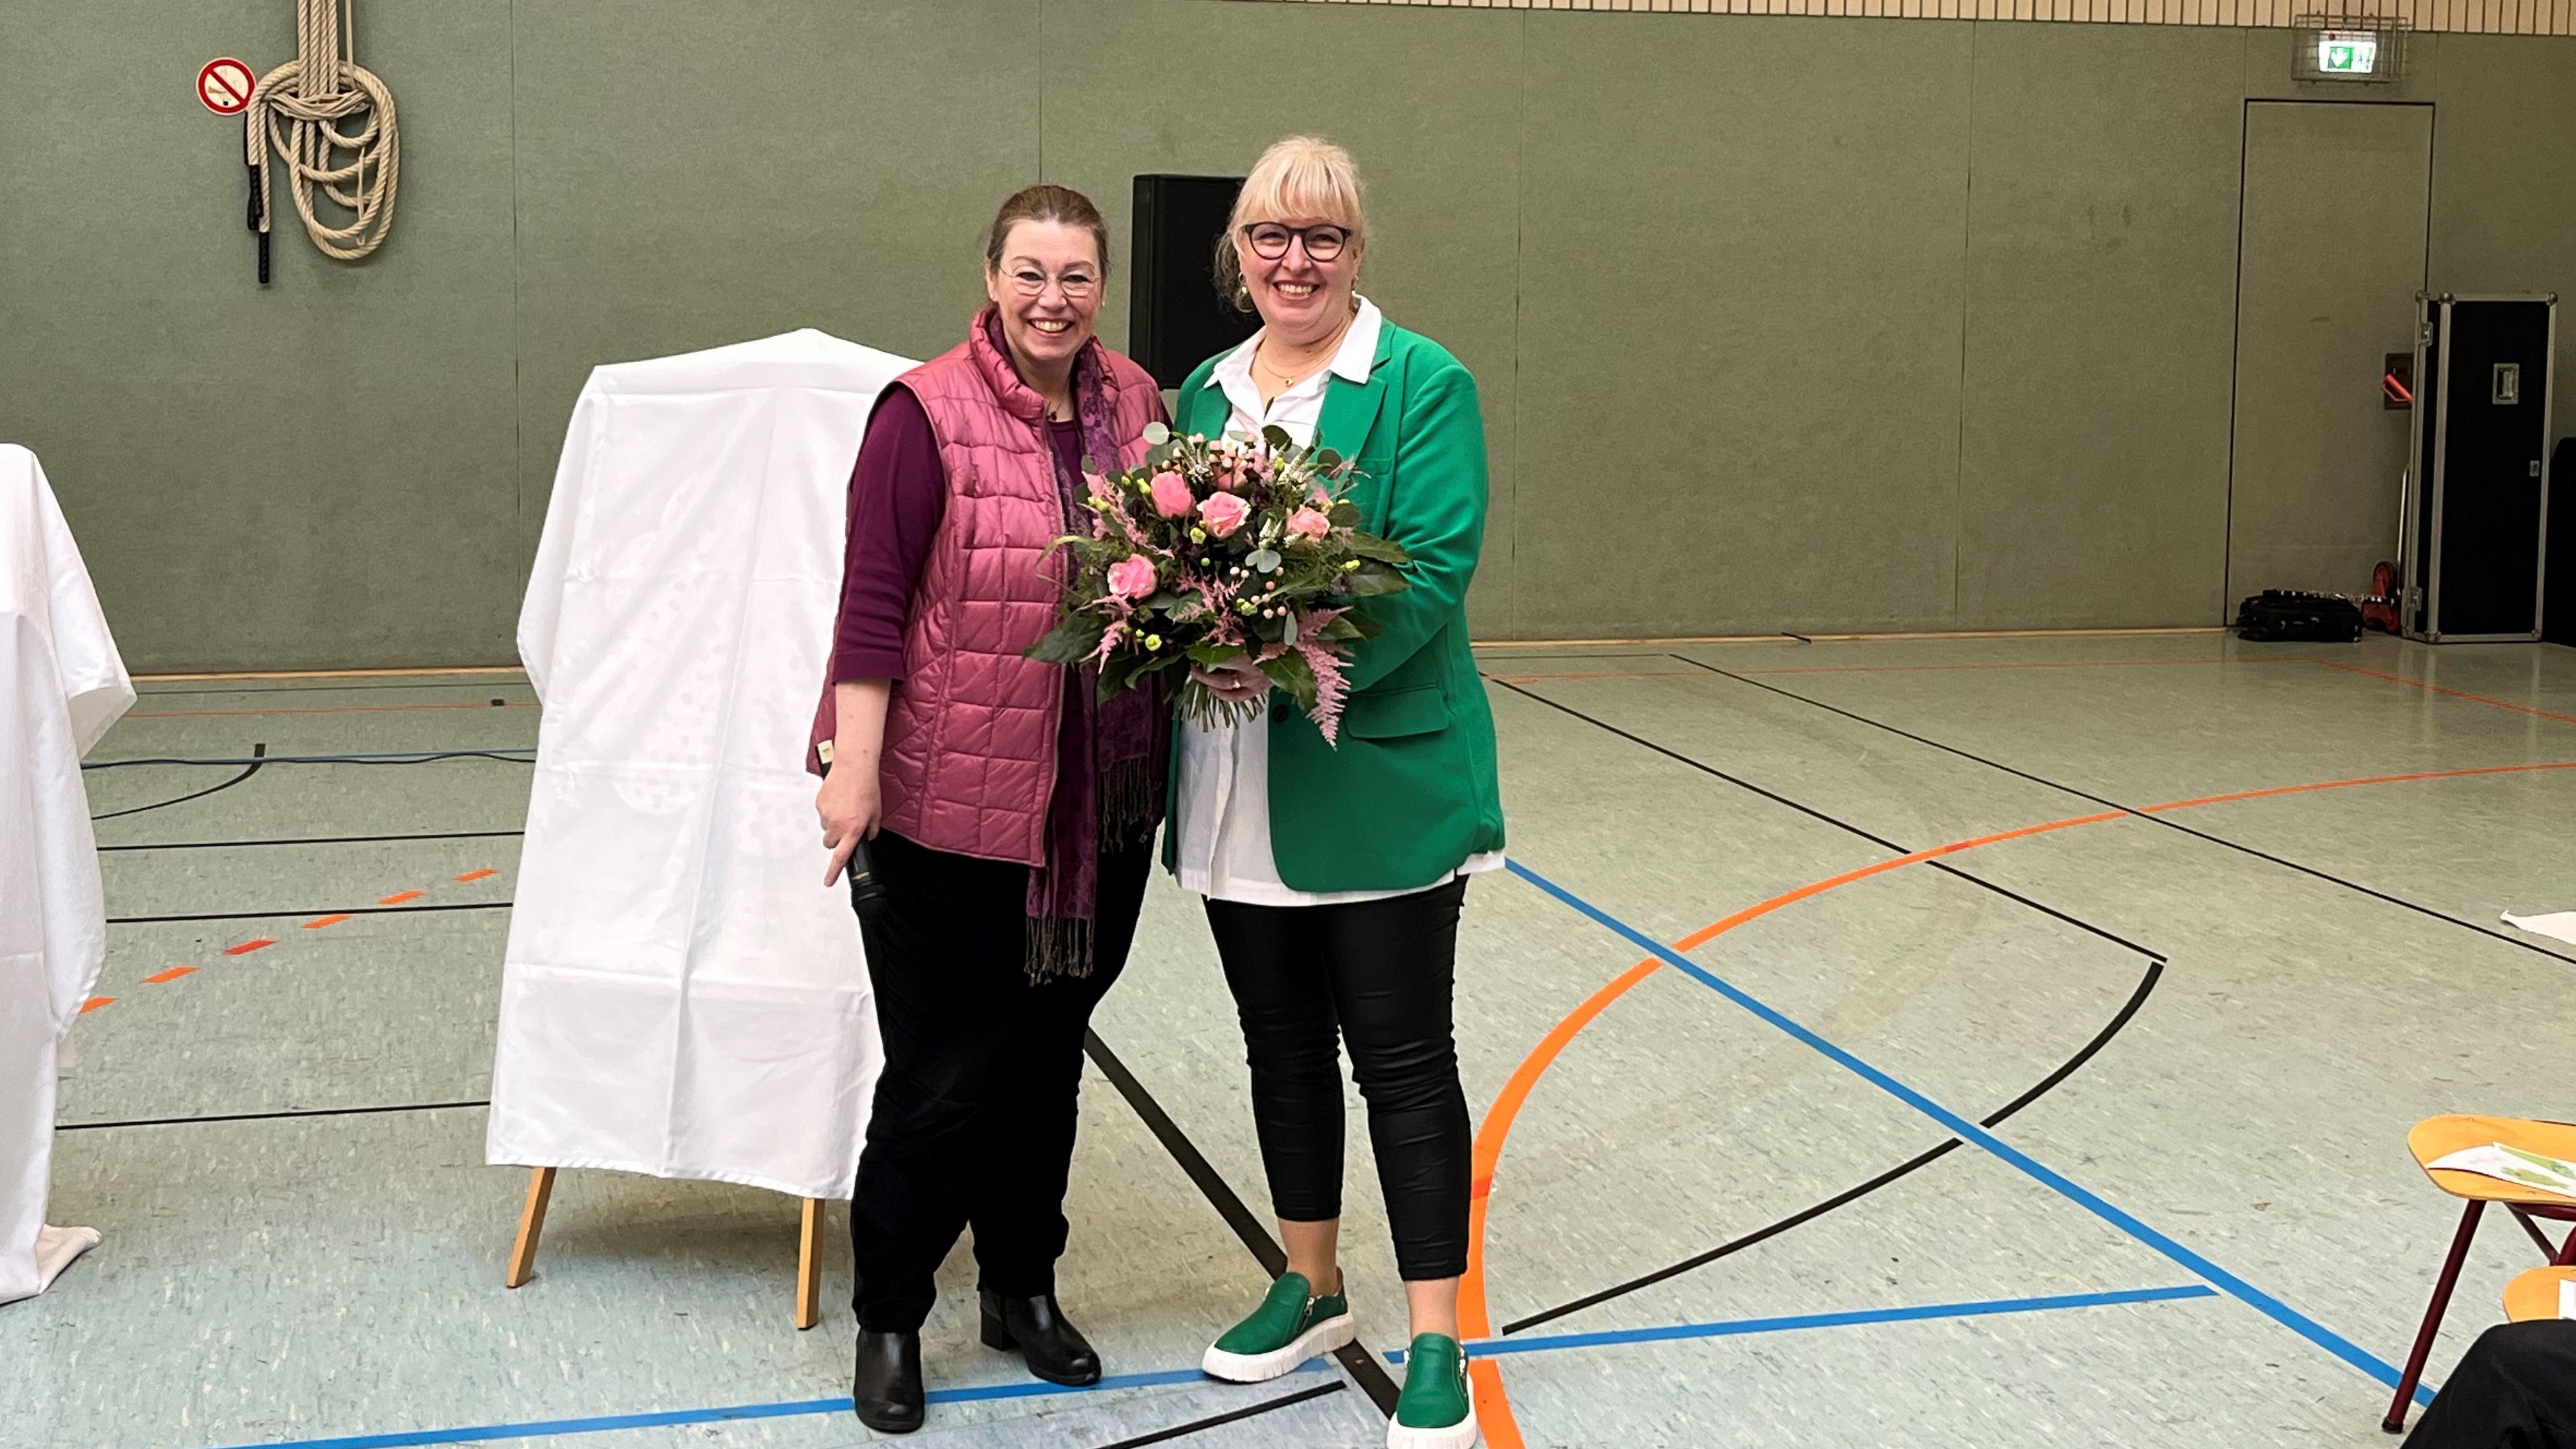 Die Erste Stadträtin Sandra Sollmann und Anja Heckmann-Hollmann stehen in einer Turnhalle. Heckmann-Hollmann wird ein Blumenstraß überreicht